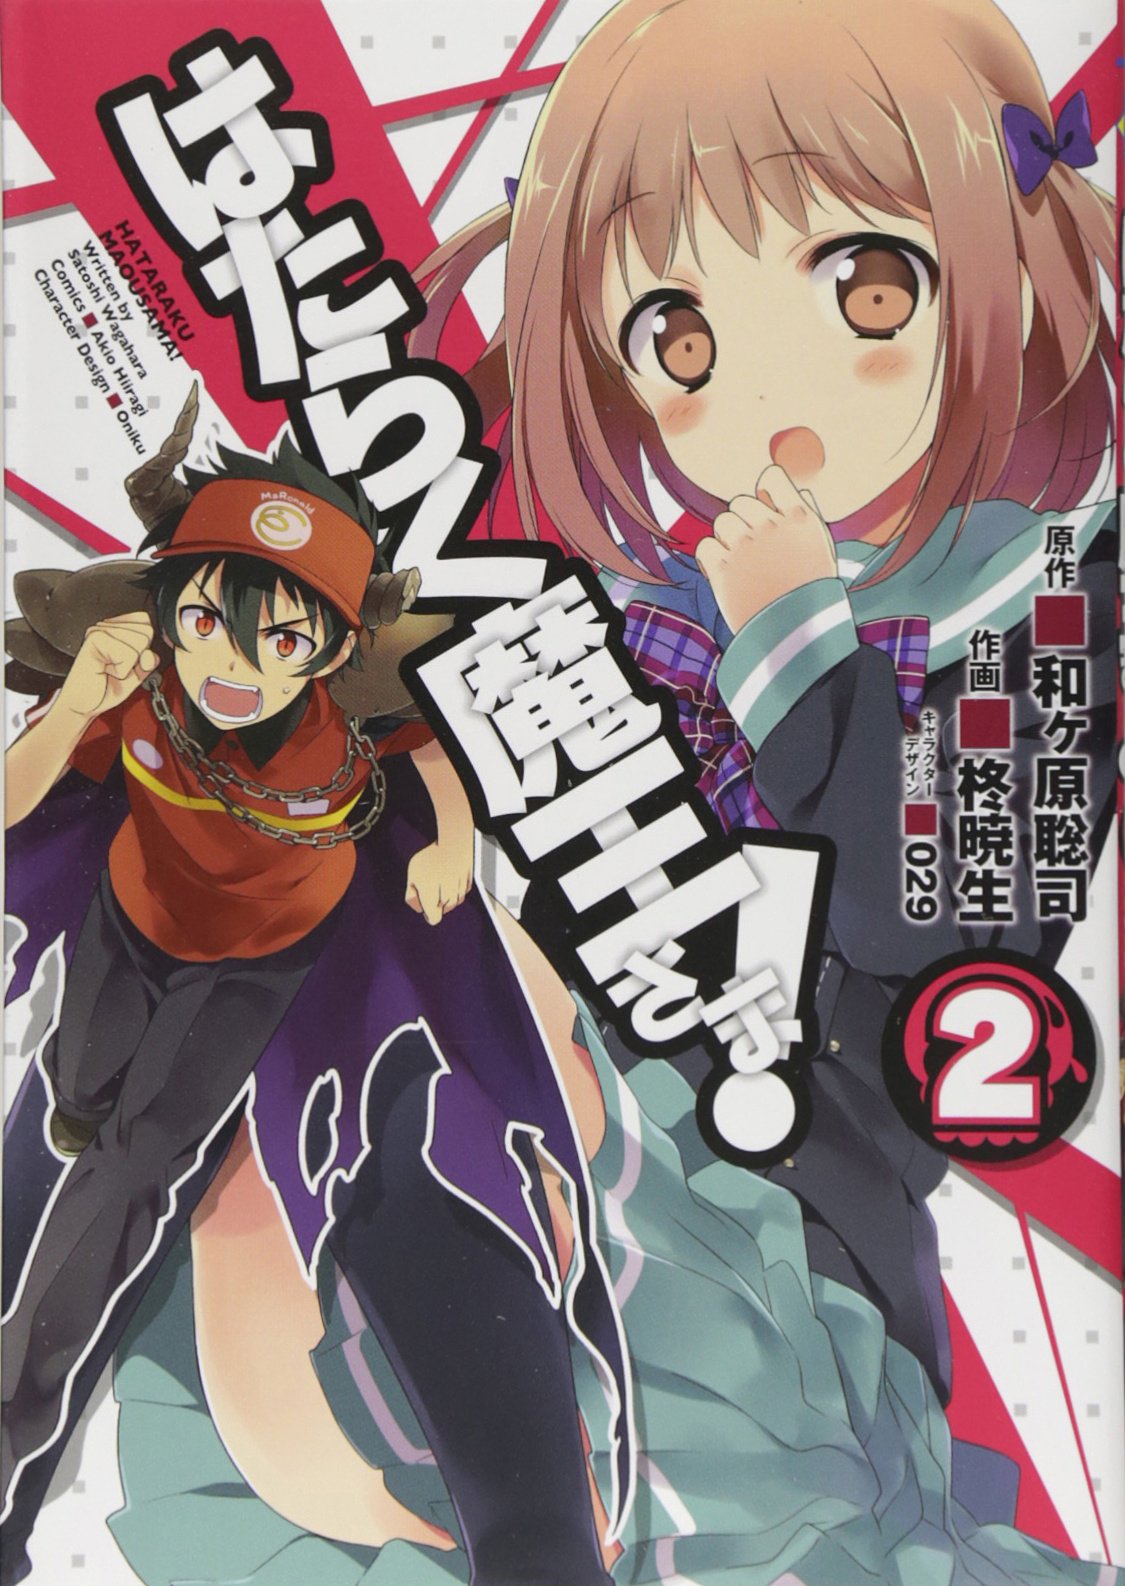 Hataraku Maou-sama! (The Devil is a Part-Timer!) #2  / Comic